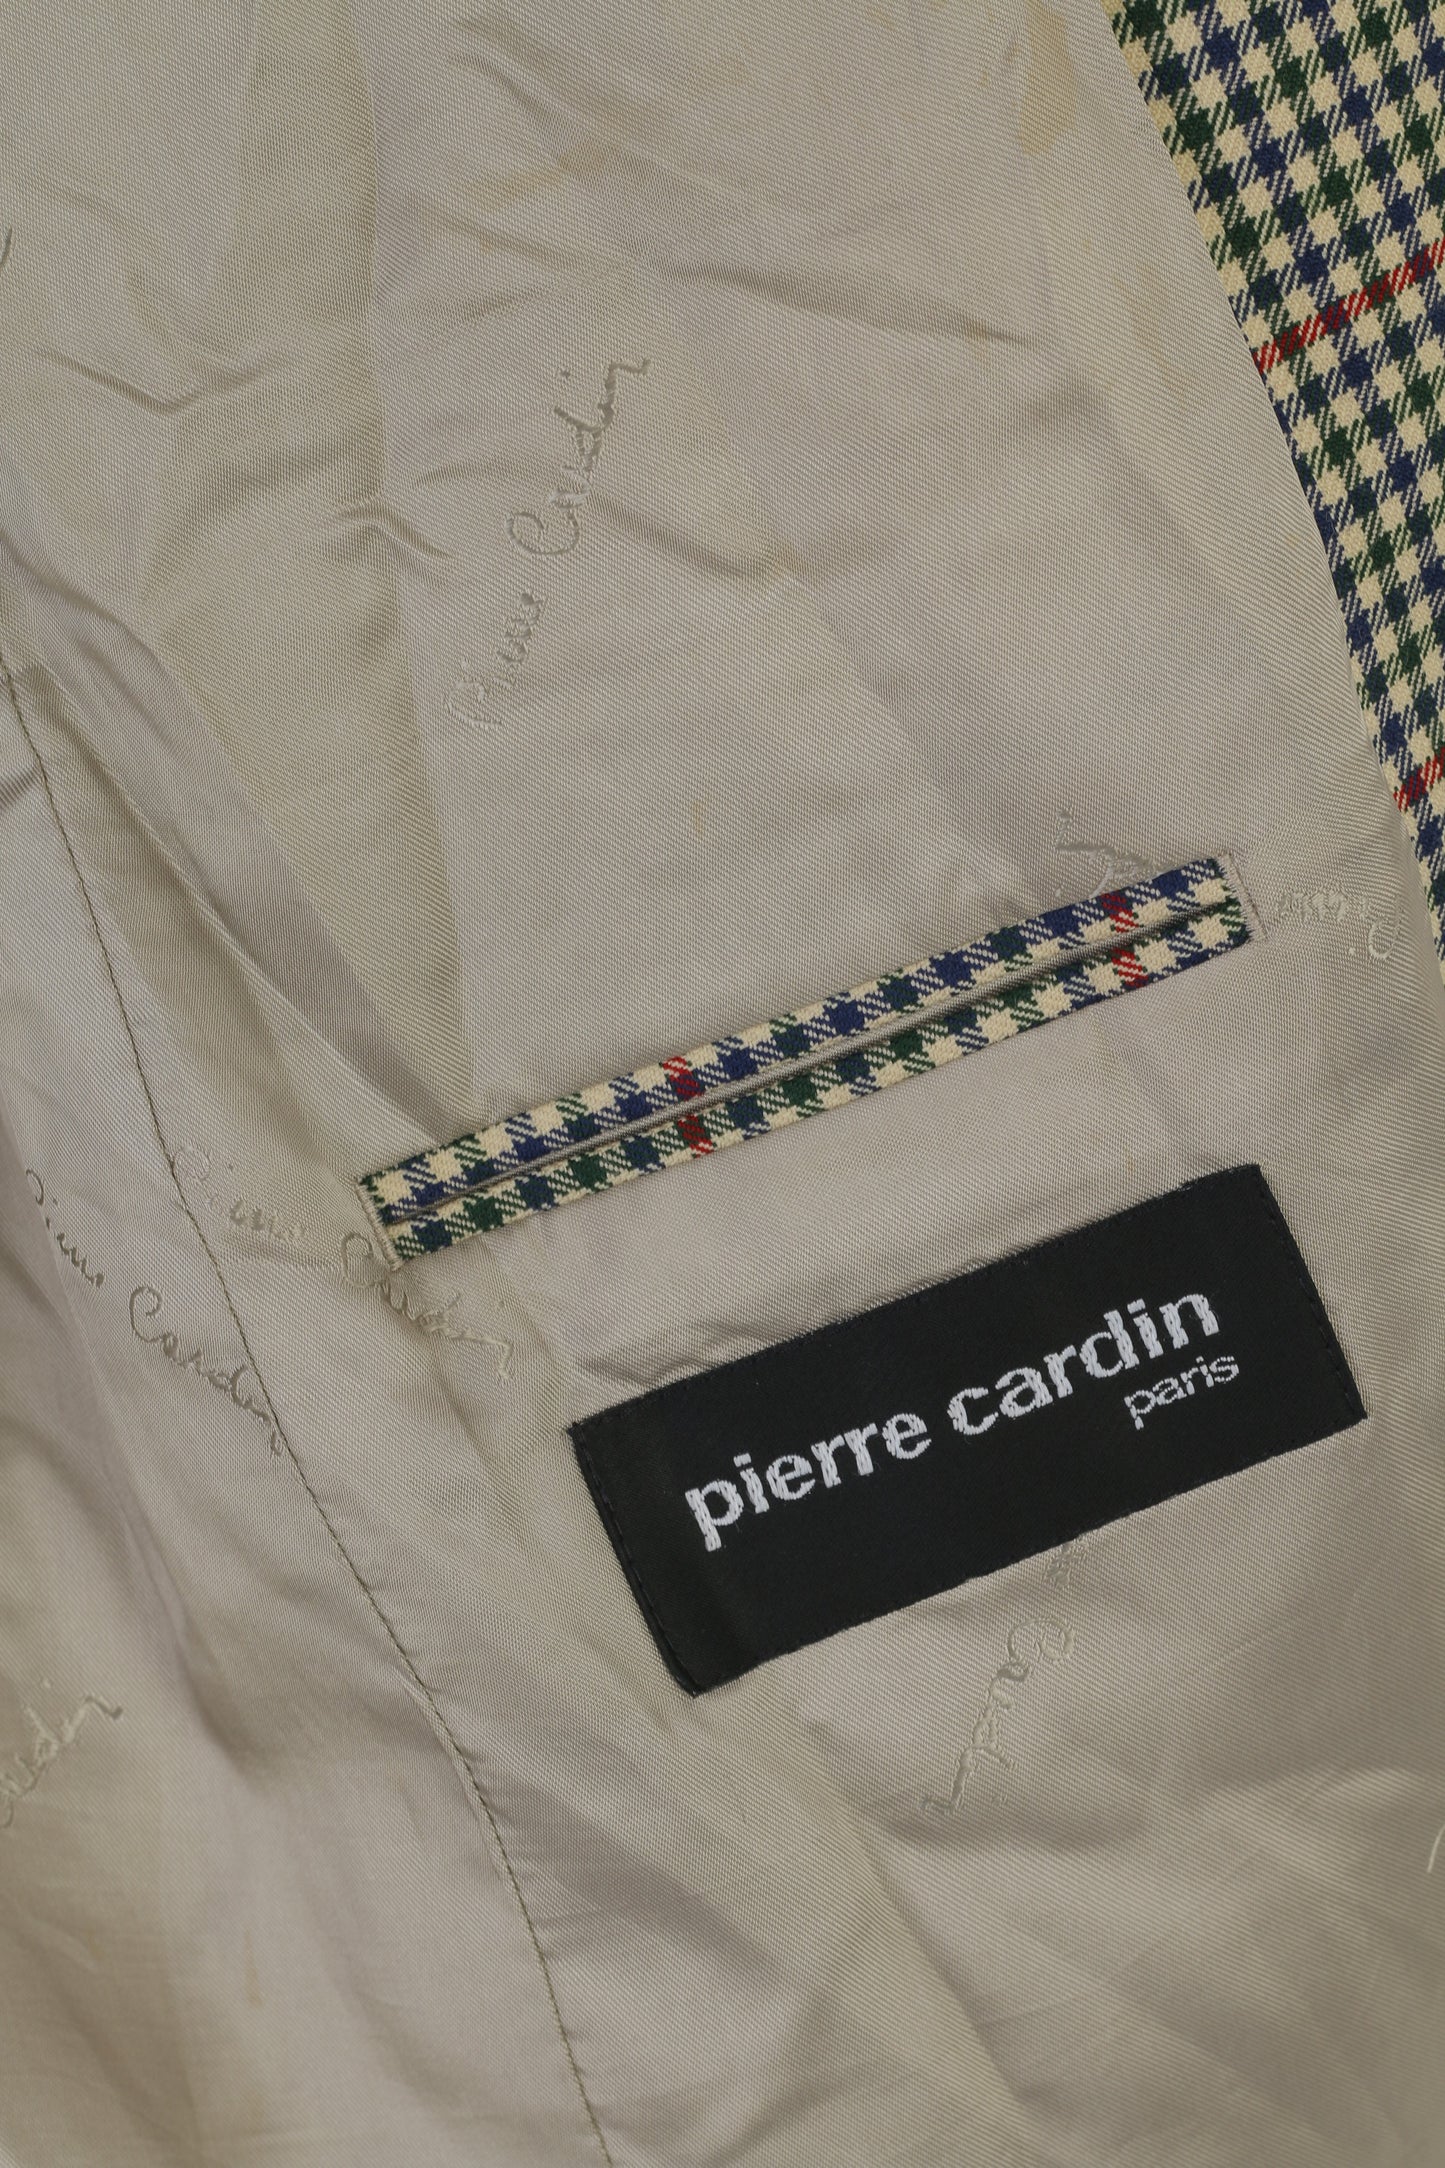 Pierre Cardin Paris Homme 98 40 Blazer Vert Laine vintage Veste Simple Boutonnage